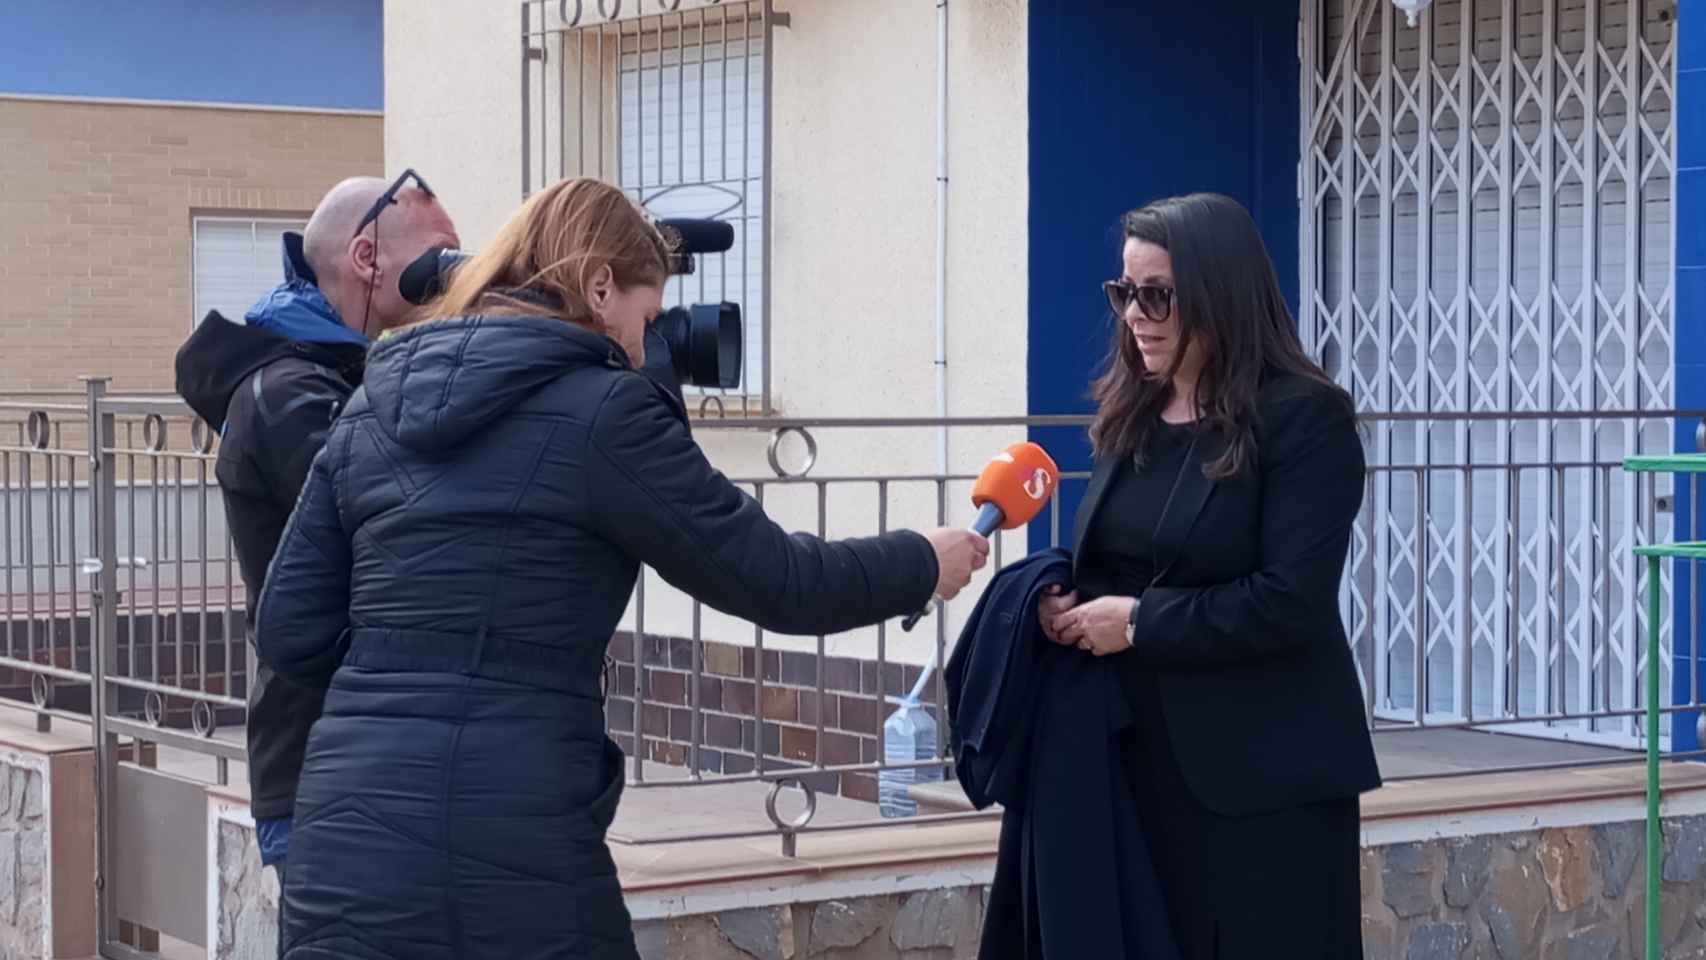 La abogada Verónica Ene, este viernes, atendiendo a unos periodistas de Antena 3 en la puerta del bloque de pisos donde residen los padres del menor de edad desaparecido.